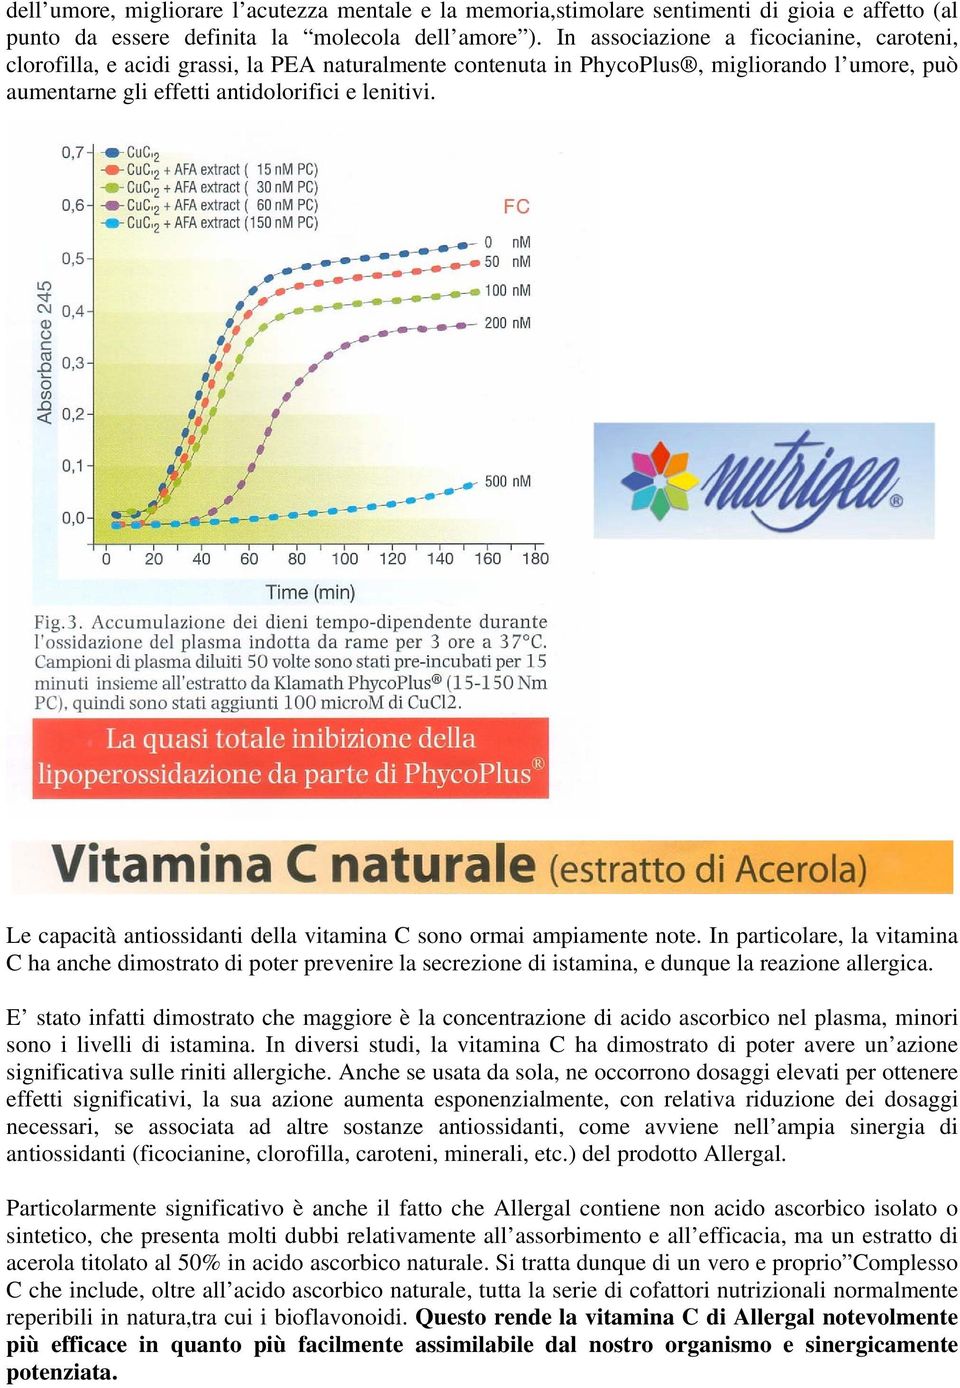 Le capacità antiossidanti della vitamina C sono ormai ampiamente note. In particolare, la vitamina C ha anche dimostrato di poter prevenire la secrezione di istamina, e dunque la reazione allergica.